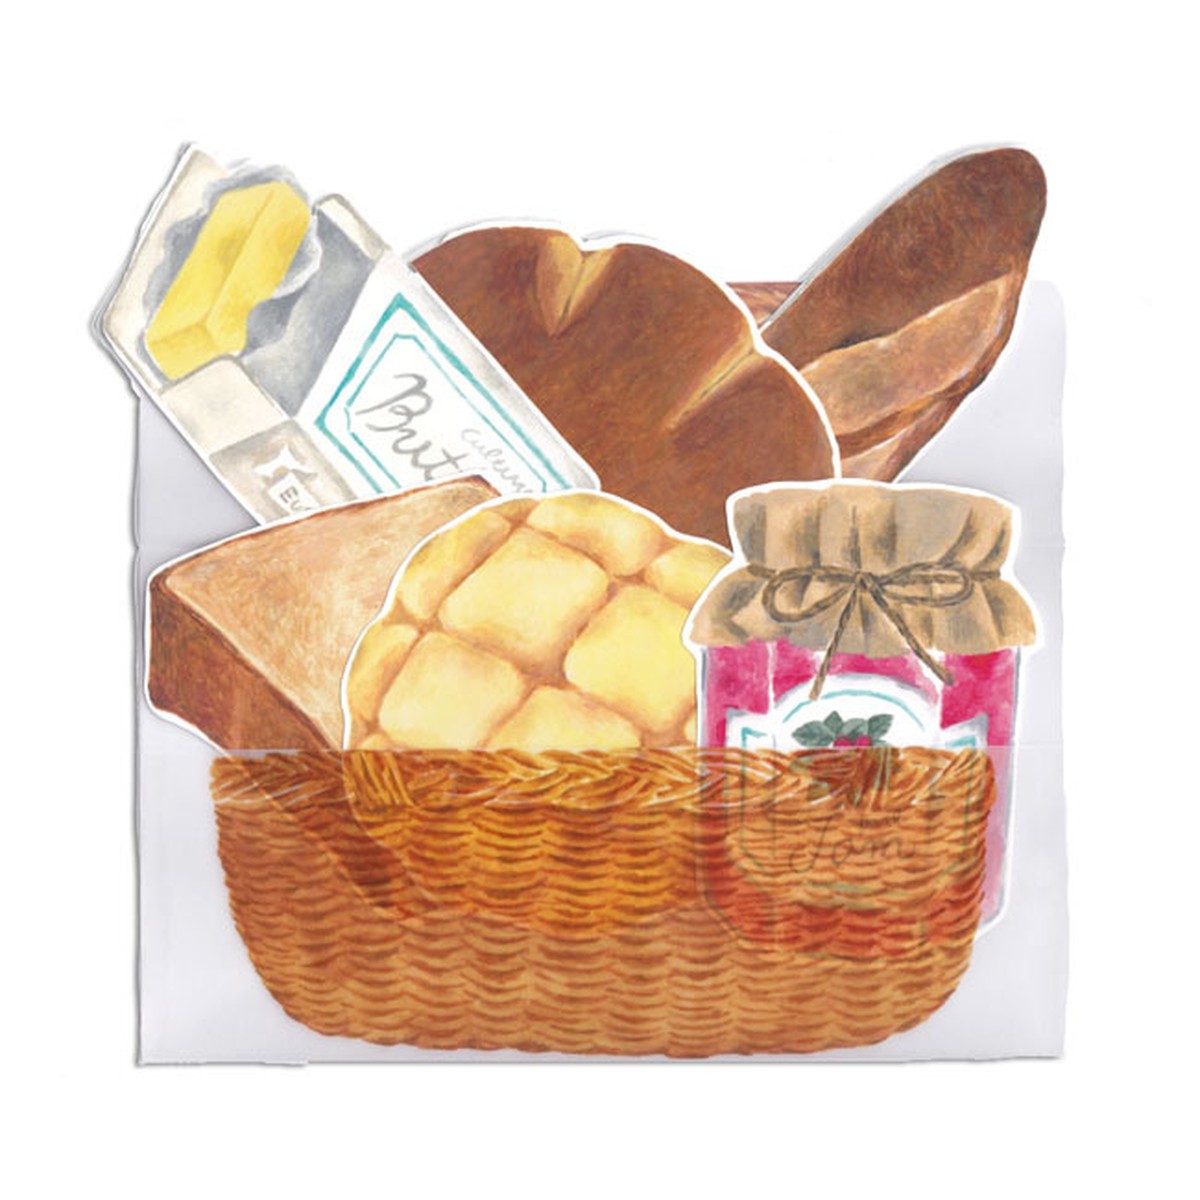 パン屋さんでお買い物するカード バスケット 封筒 と美味しいパン詰め合わせ Figpolkadot